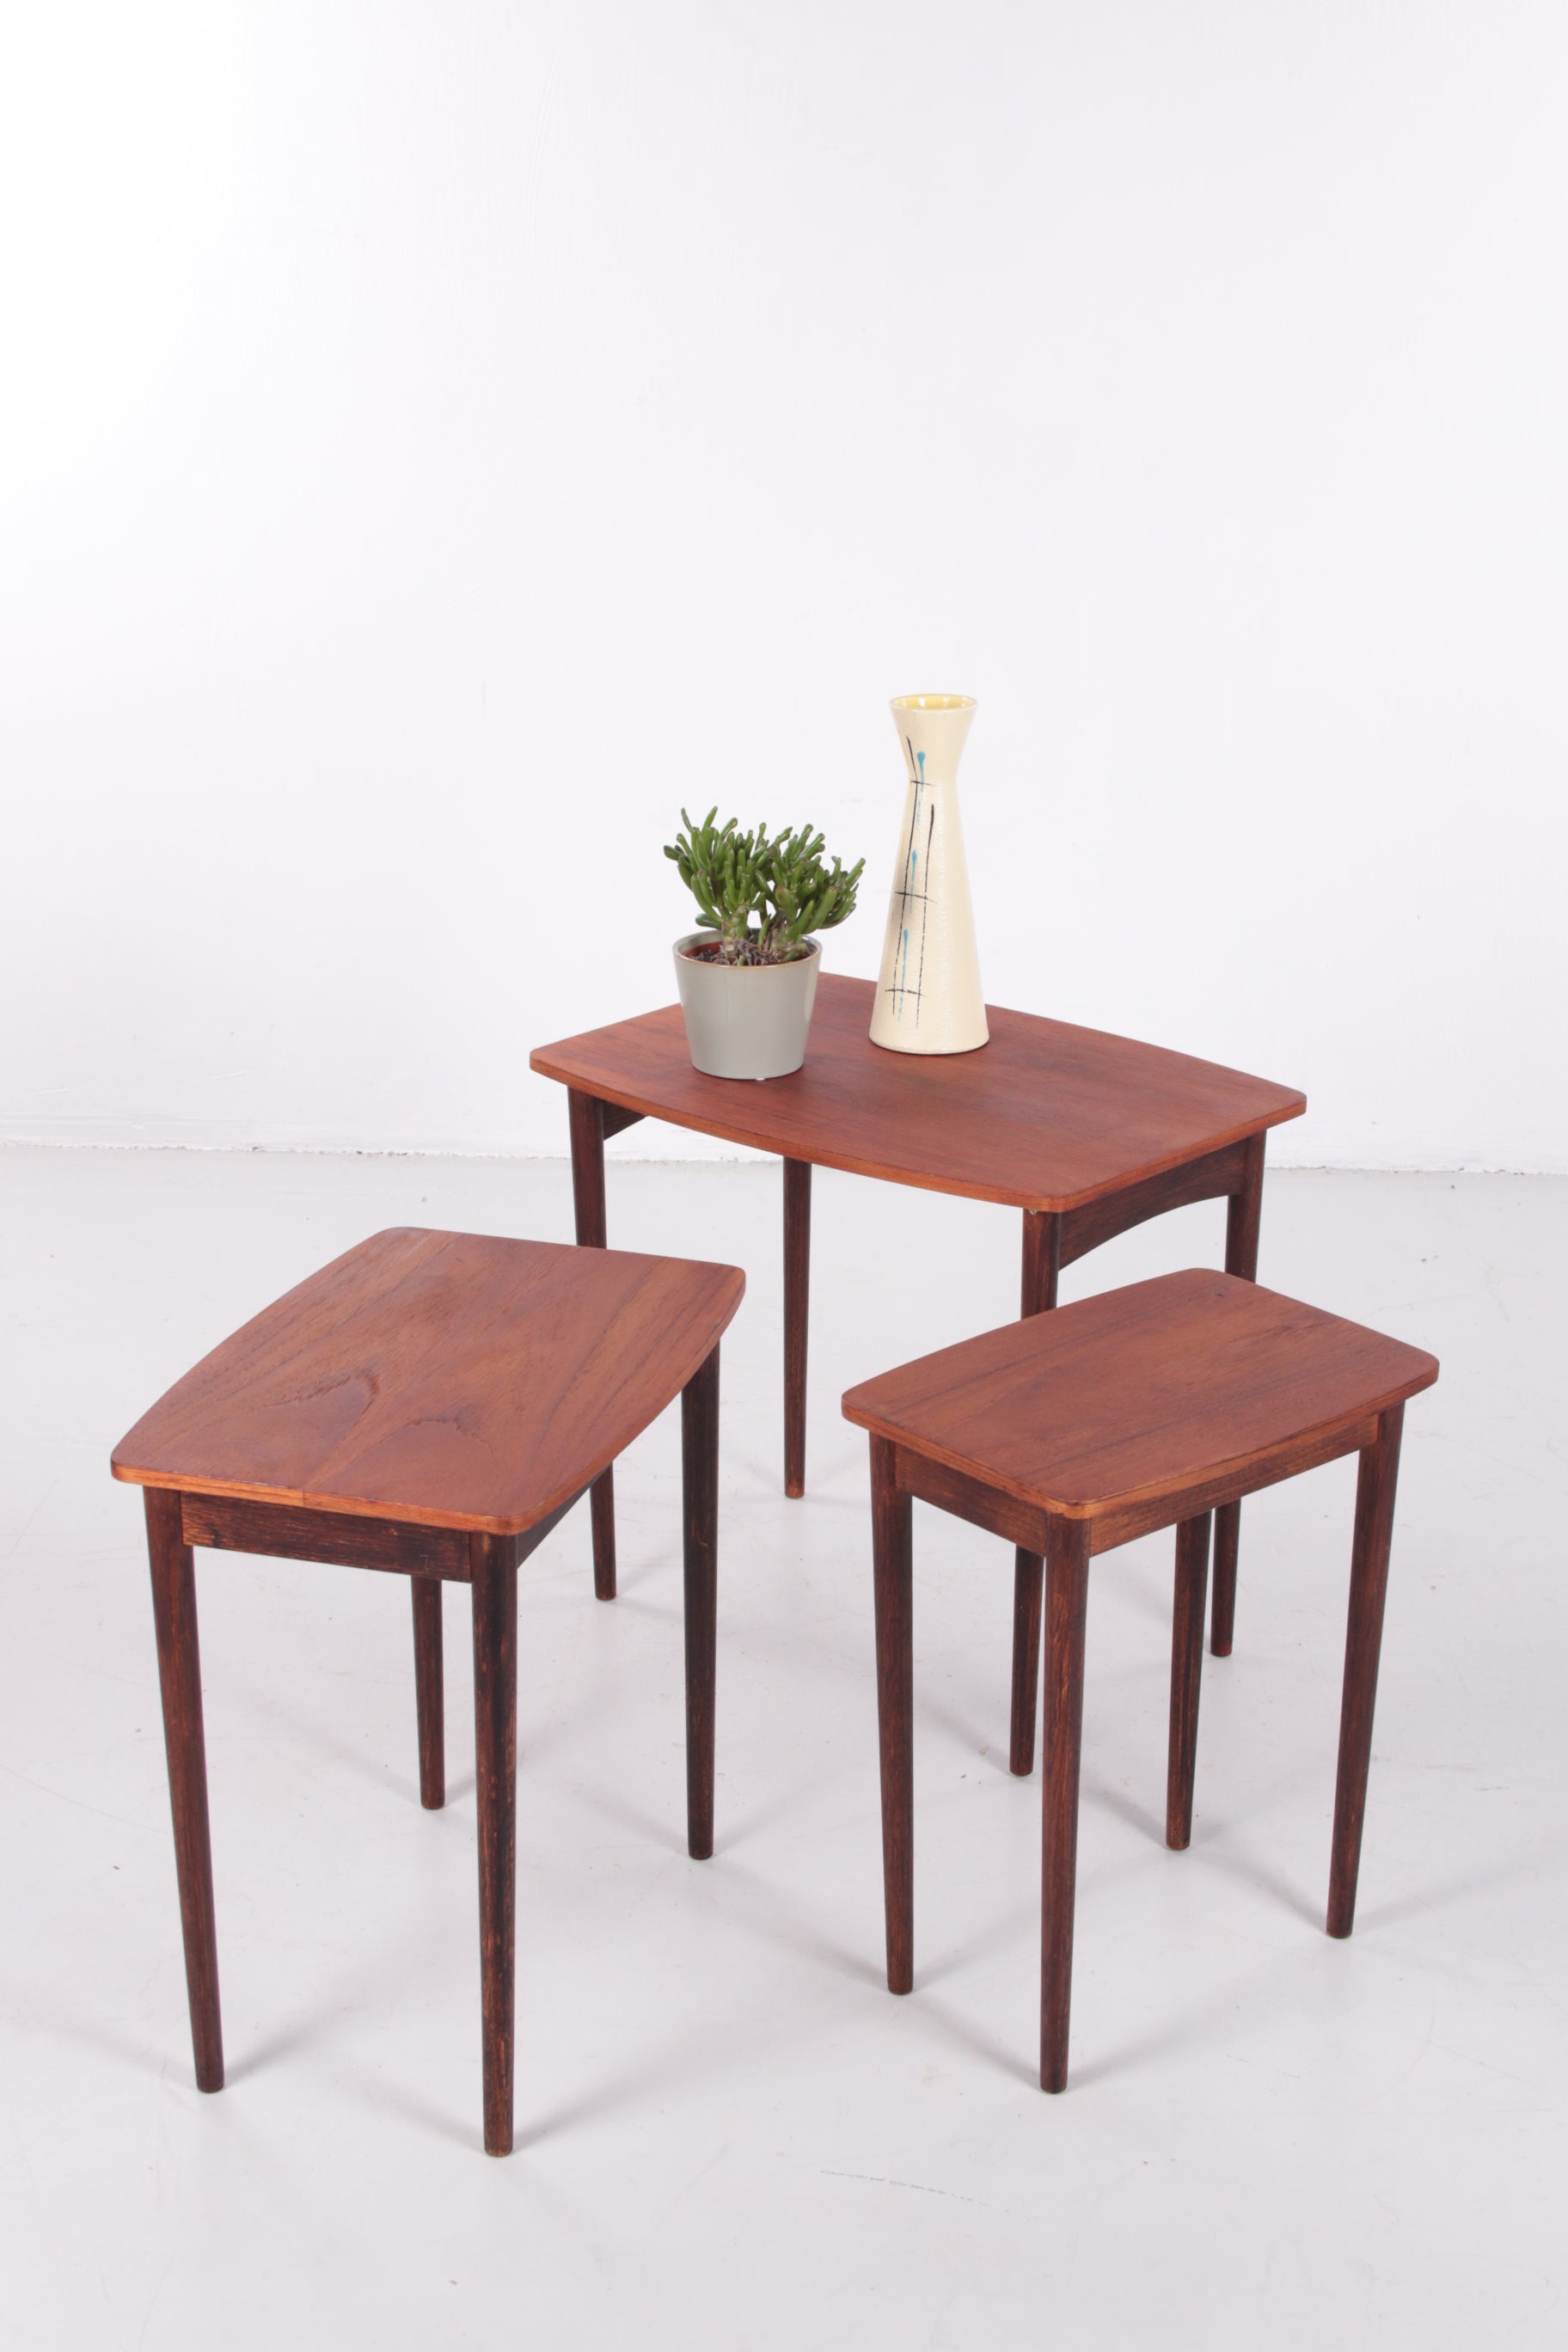 Vintage Deens design nesting tables mimiset bijzettafels van teak hout sfeerfoto